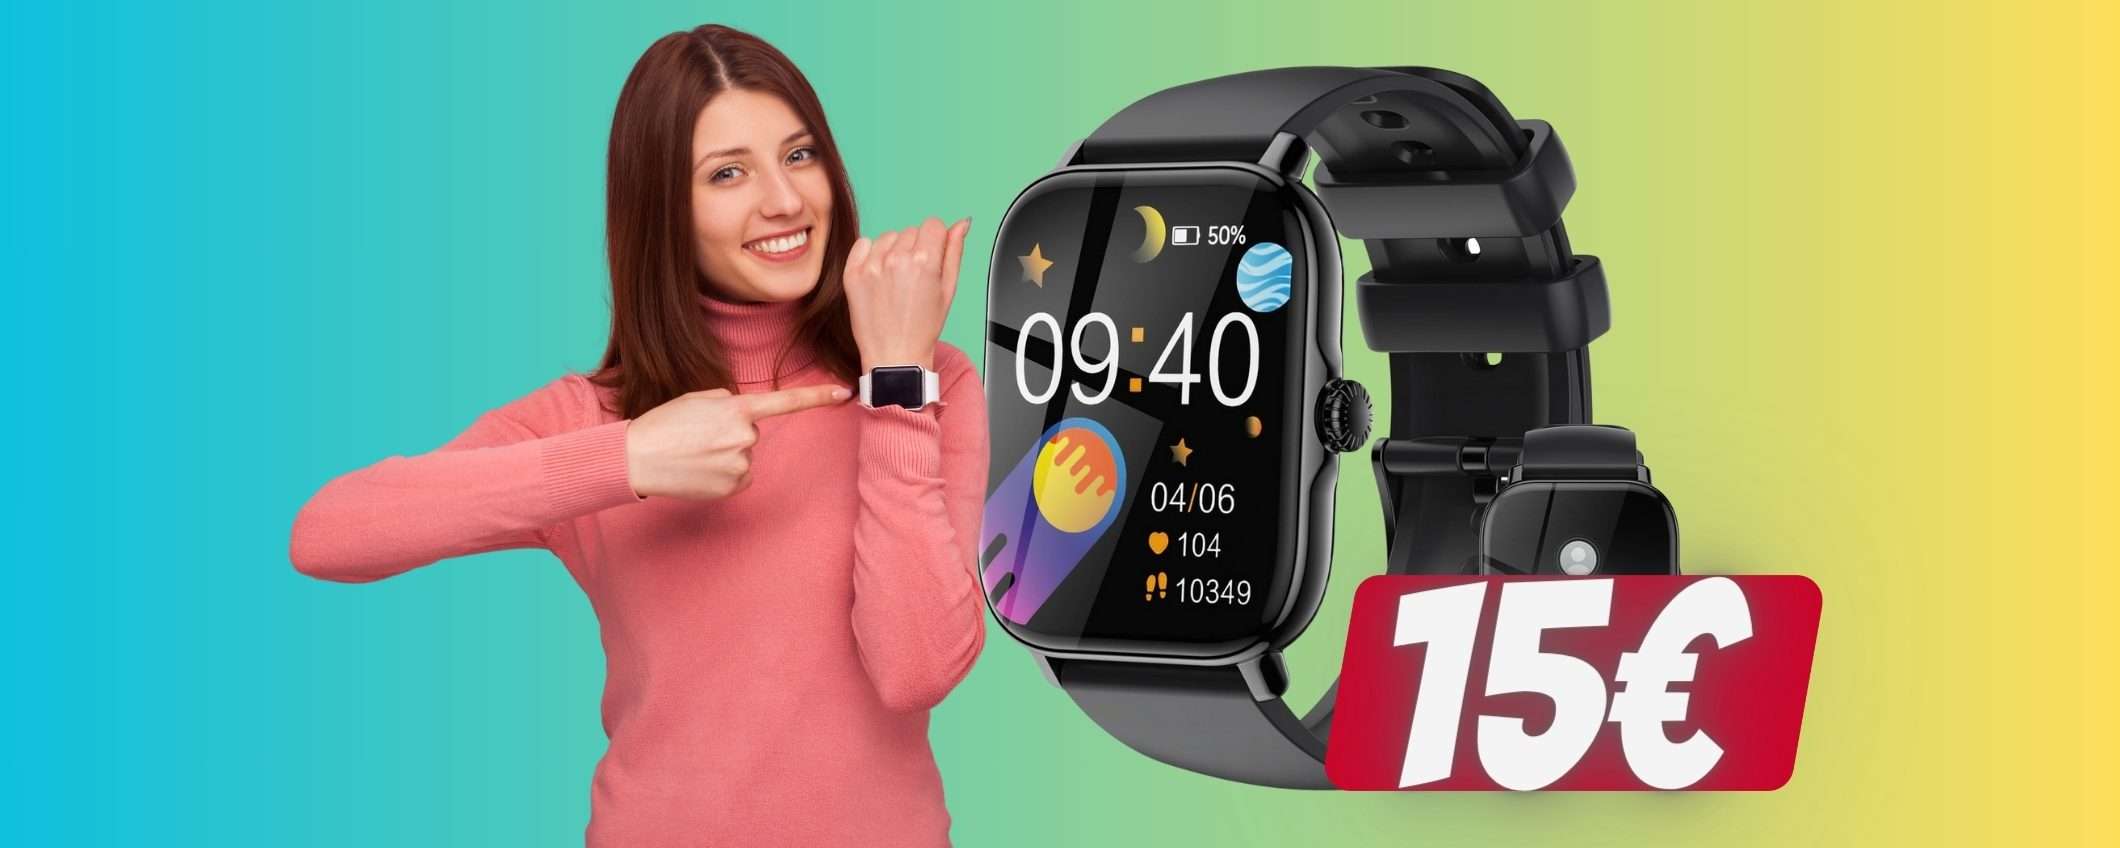 Solo 15€ per questo smartwatch con cui puoi rispondere alle chiamate